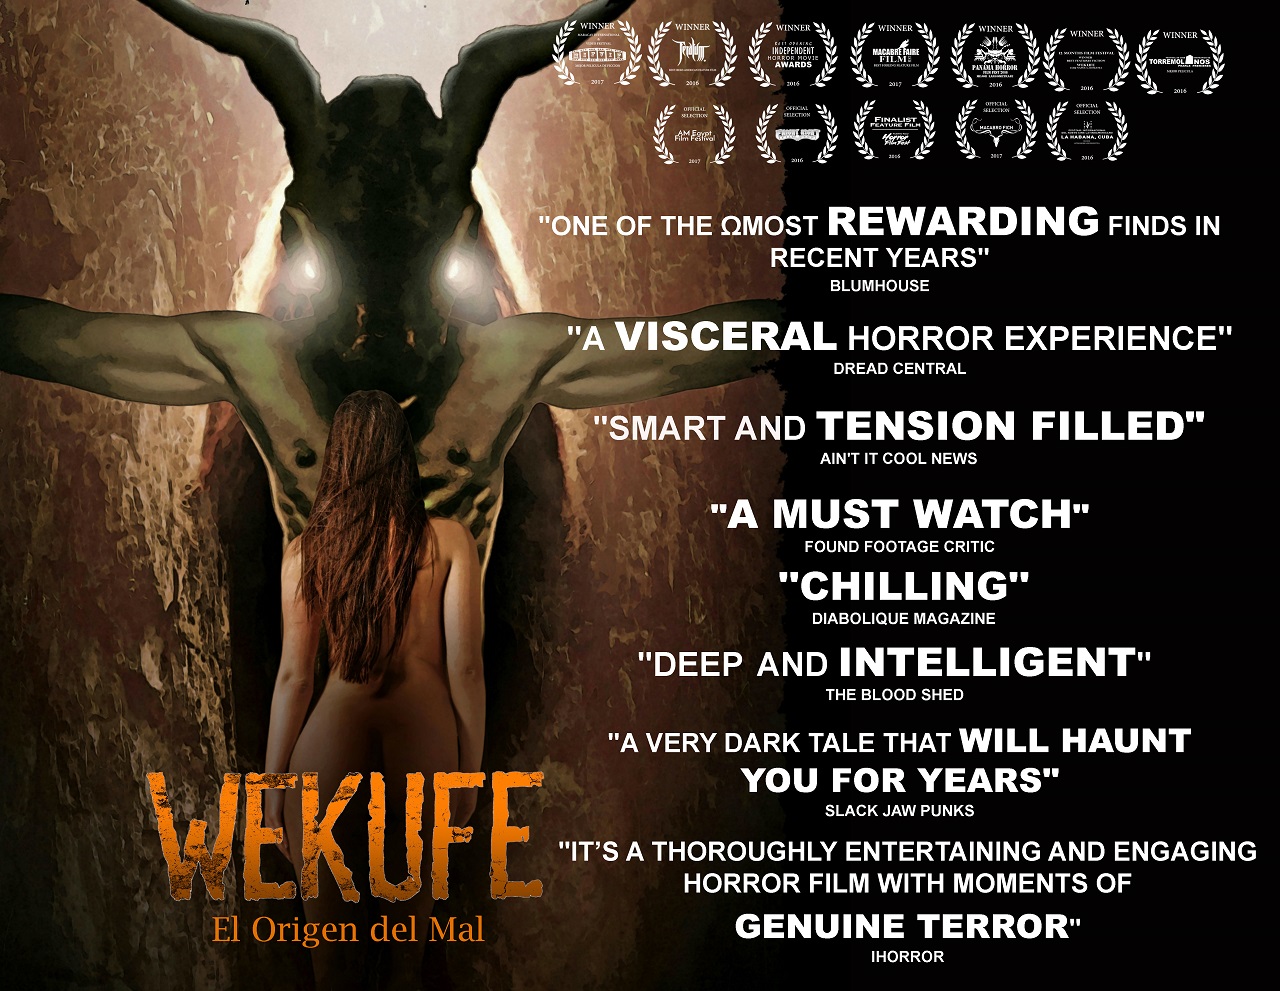 Wekufe.The.Origin.Of.Evil.(2016)-fanart16